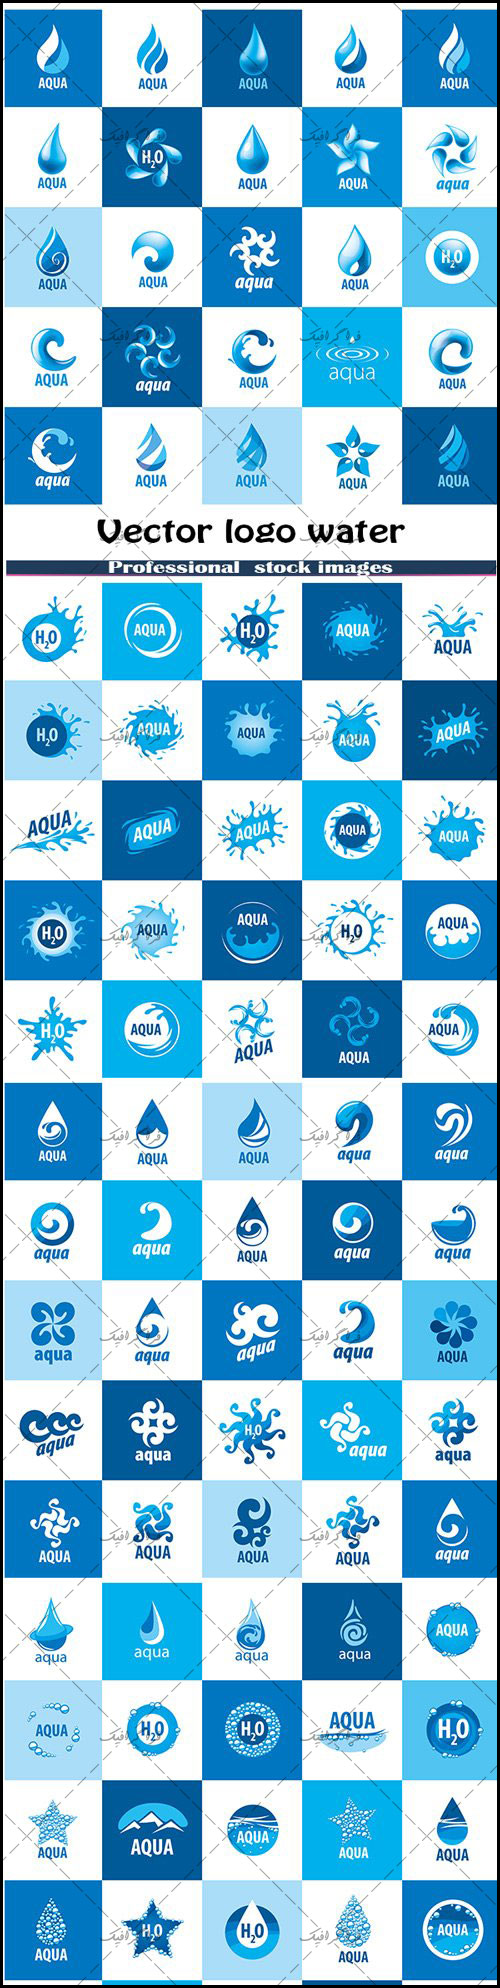 دانلود لوگو های آب - Water Logos - شماره 4